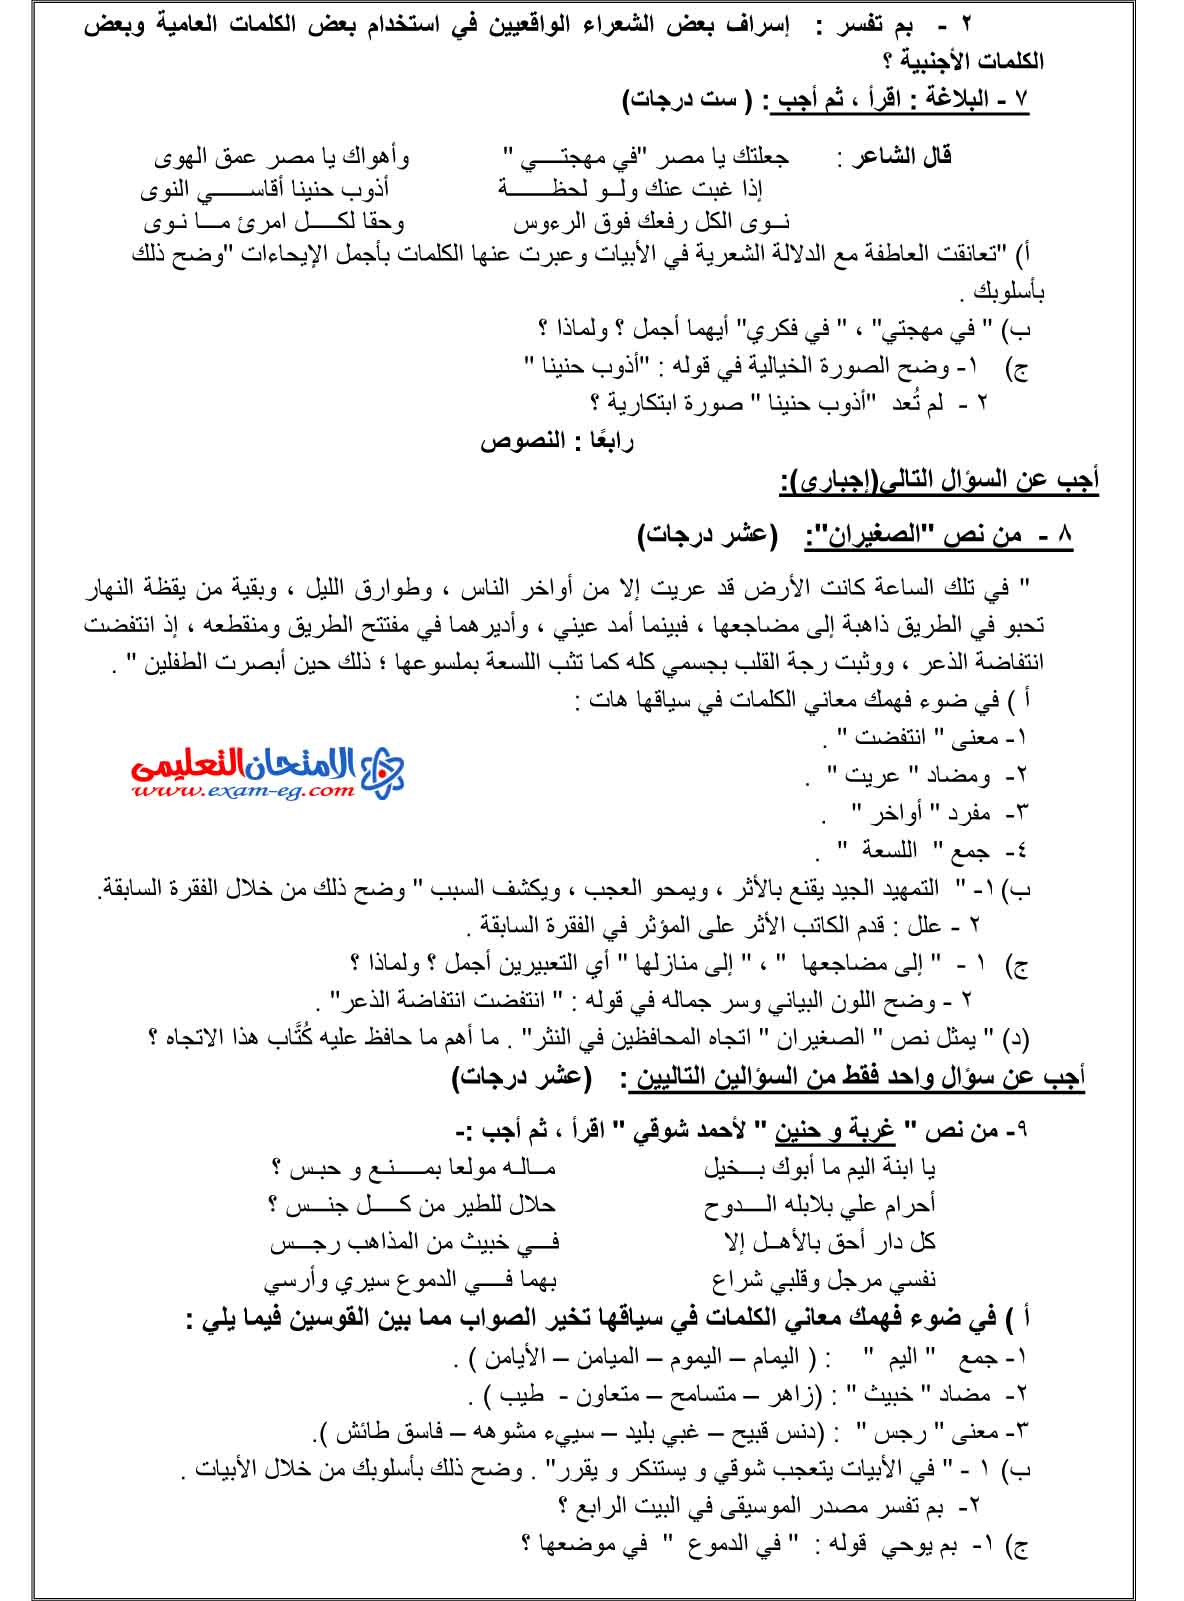 امتحان الوزارة في اللغة العربية 2